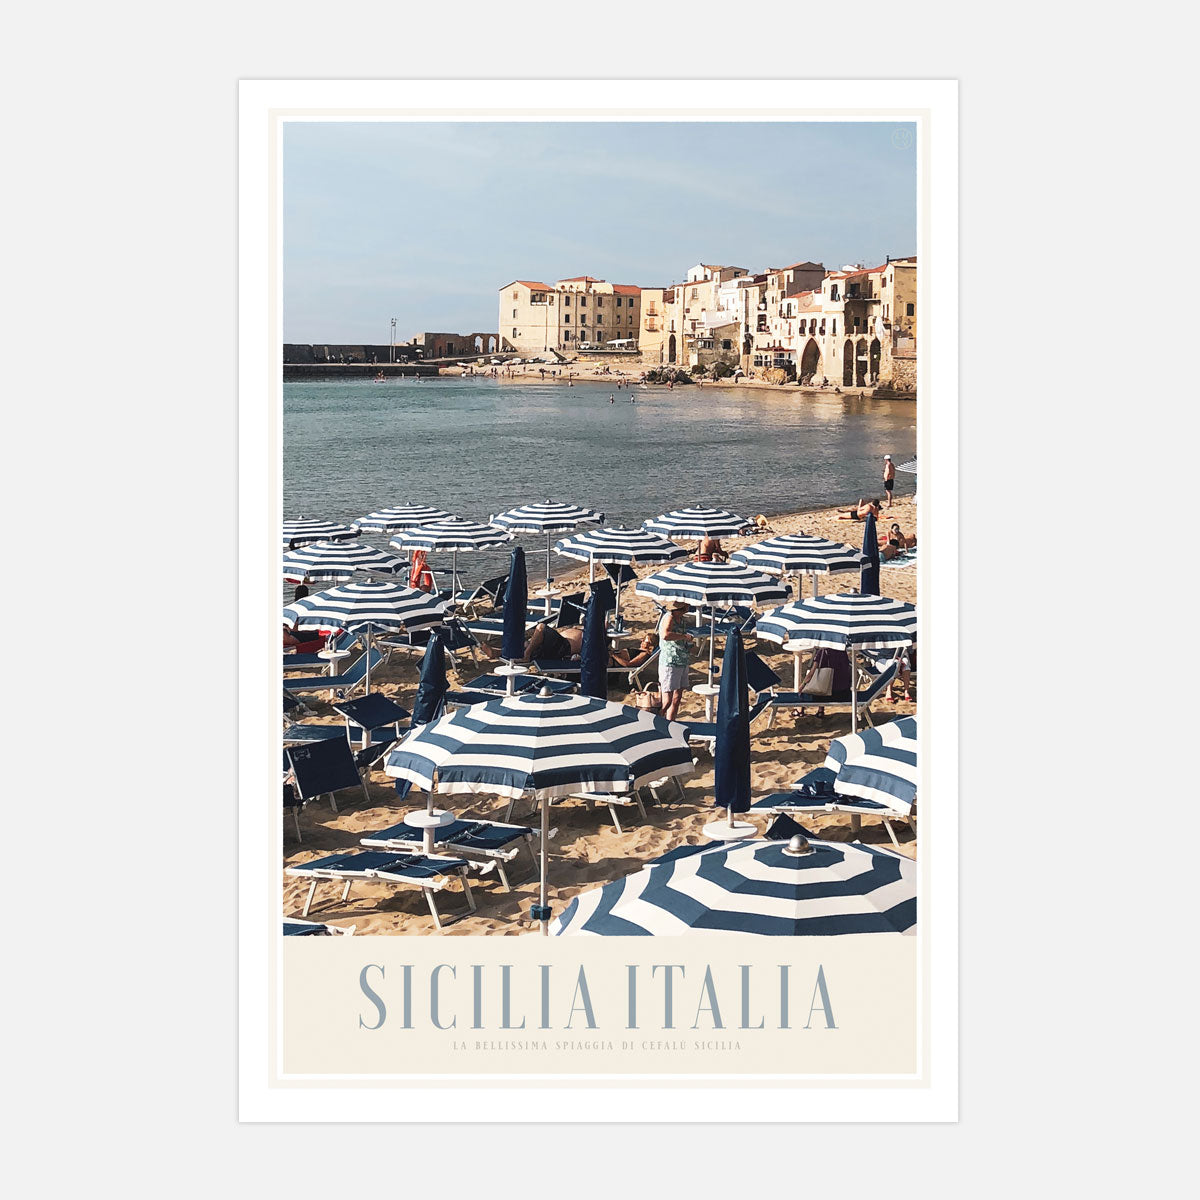 Sicilia Italia vintage retro print from Places We Luv